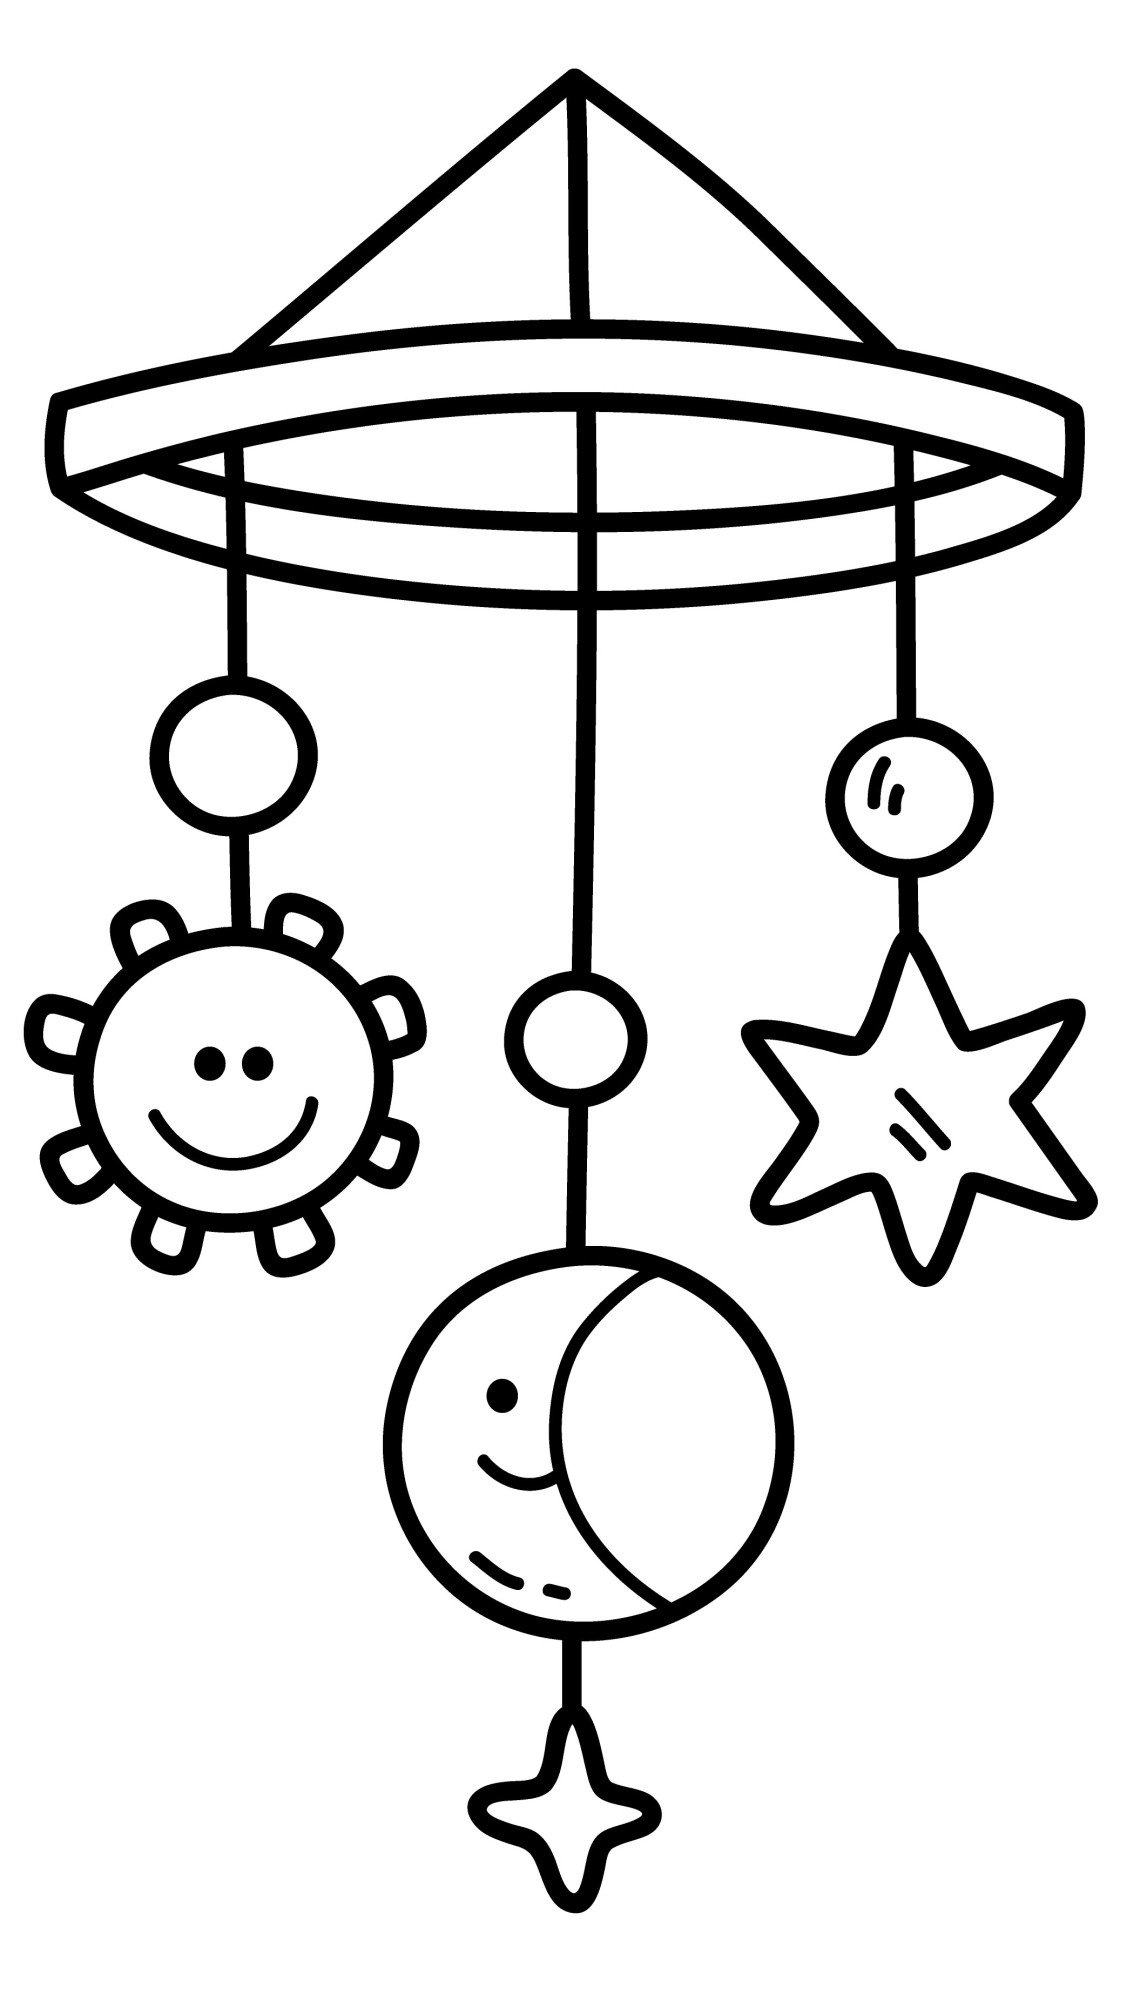 Раскраска для детей: игрушки колыбельные солнышко, звездочка и луна